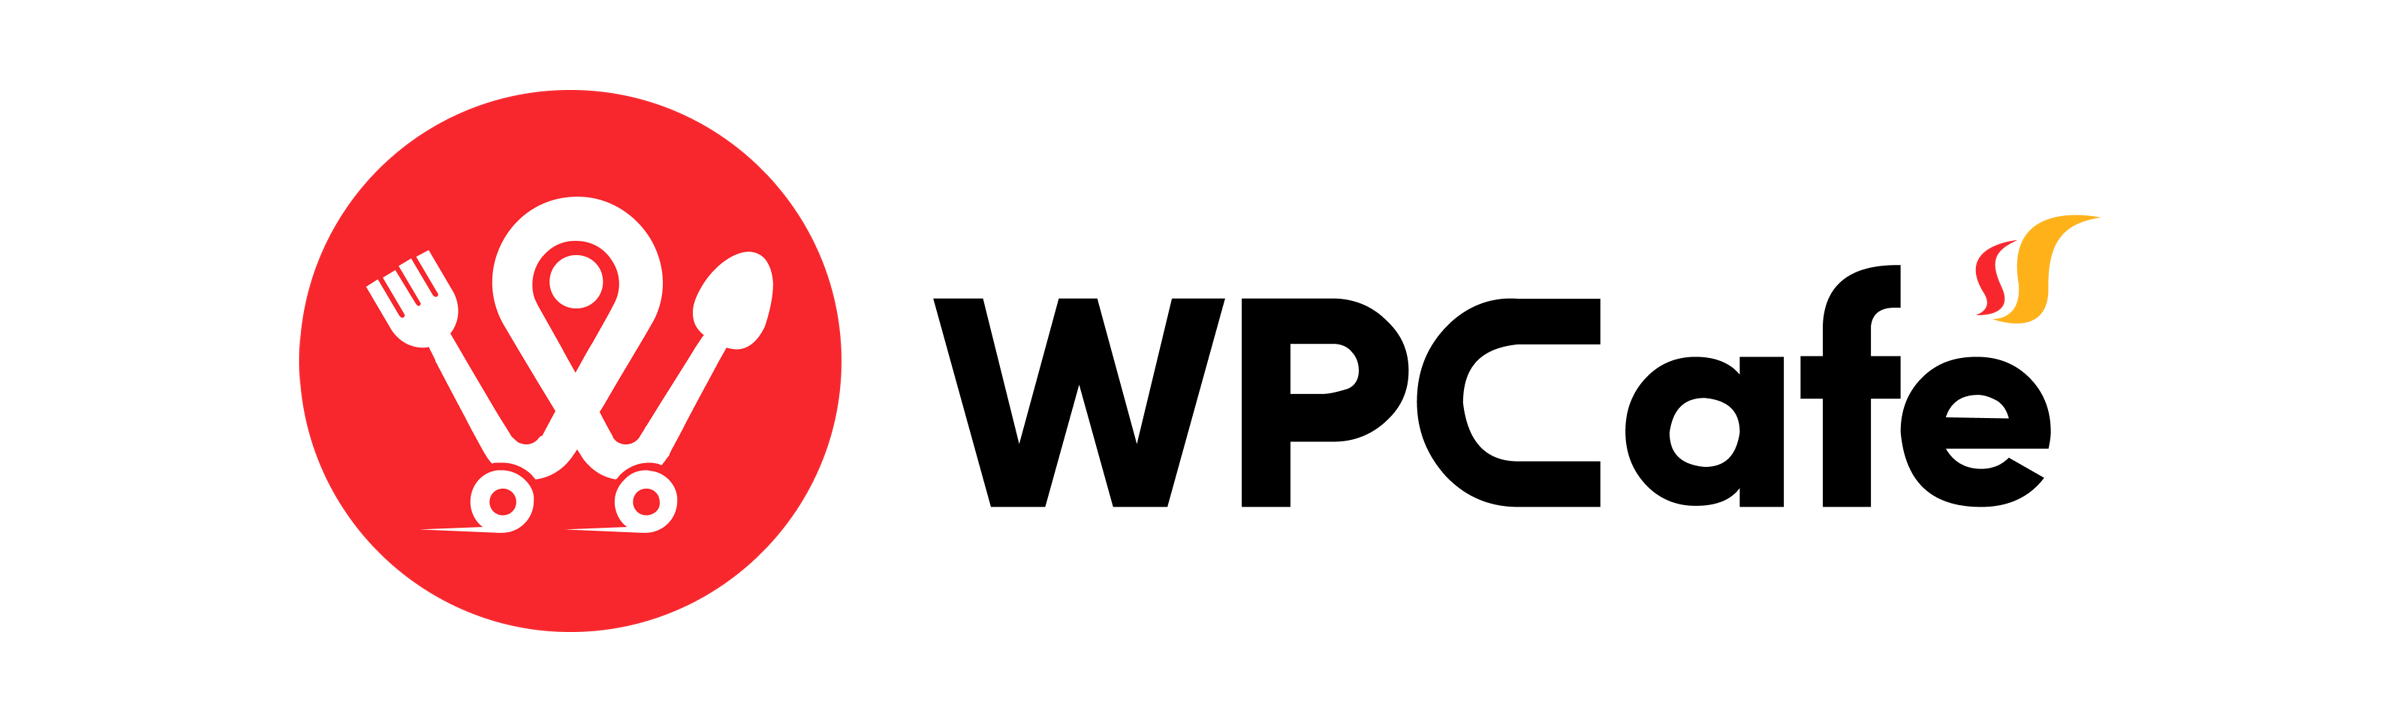 wpcafe logo-1